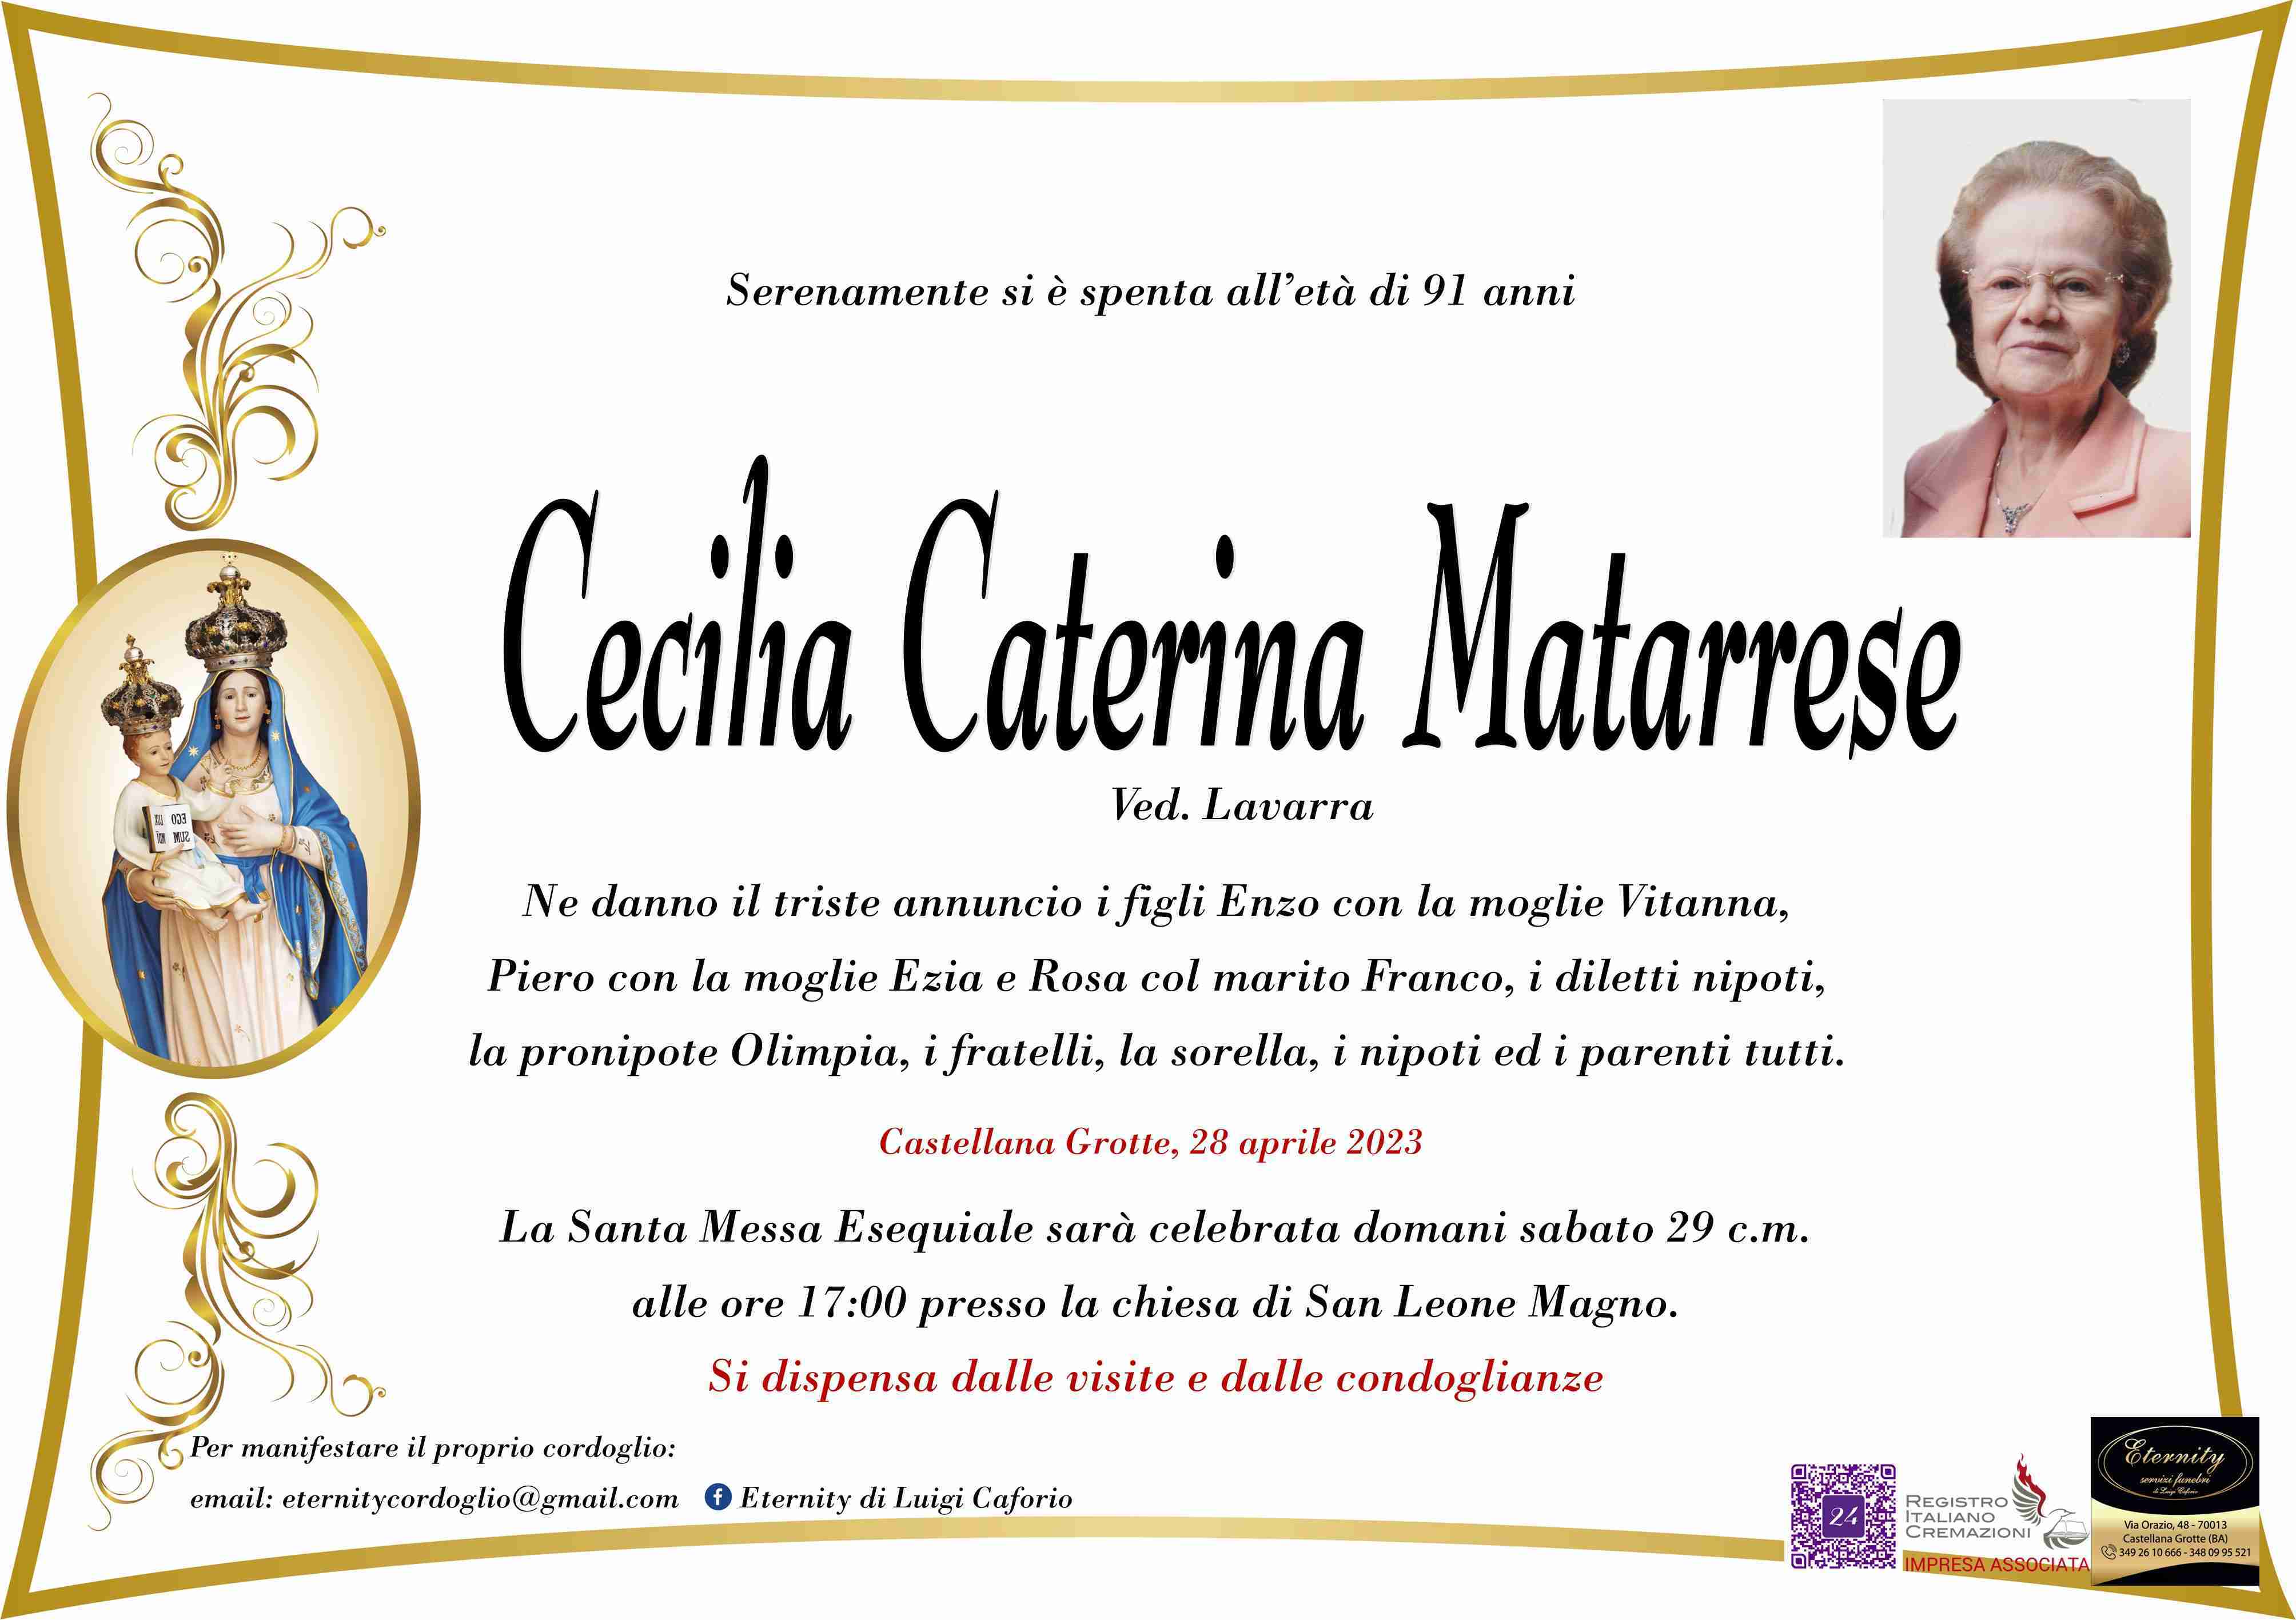 Cecilia Caterina Matarrese